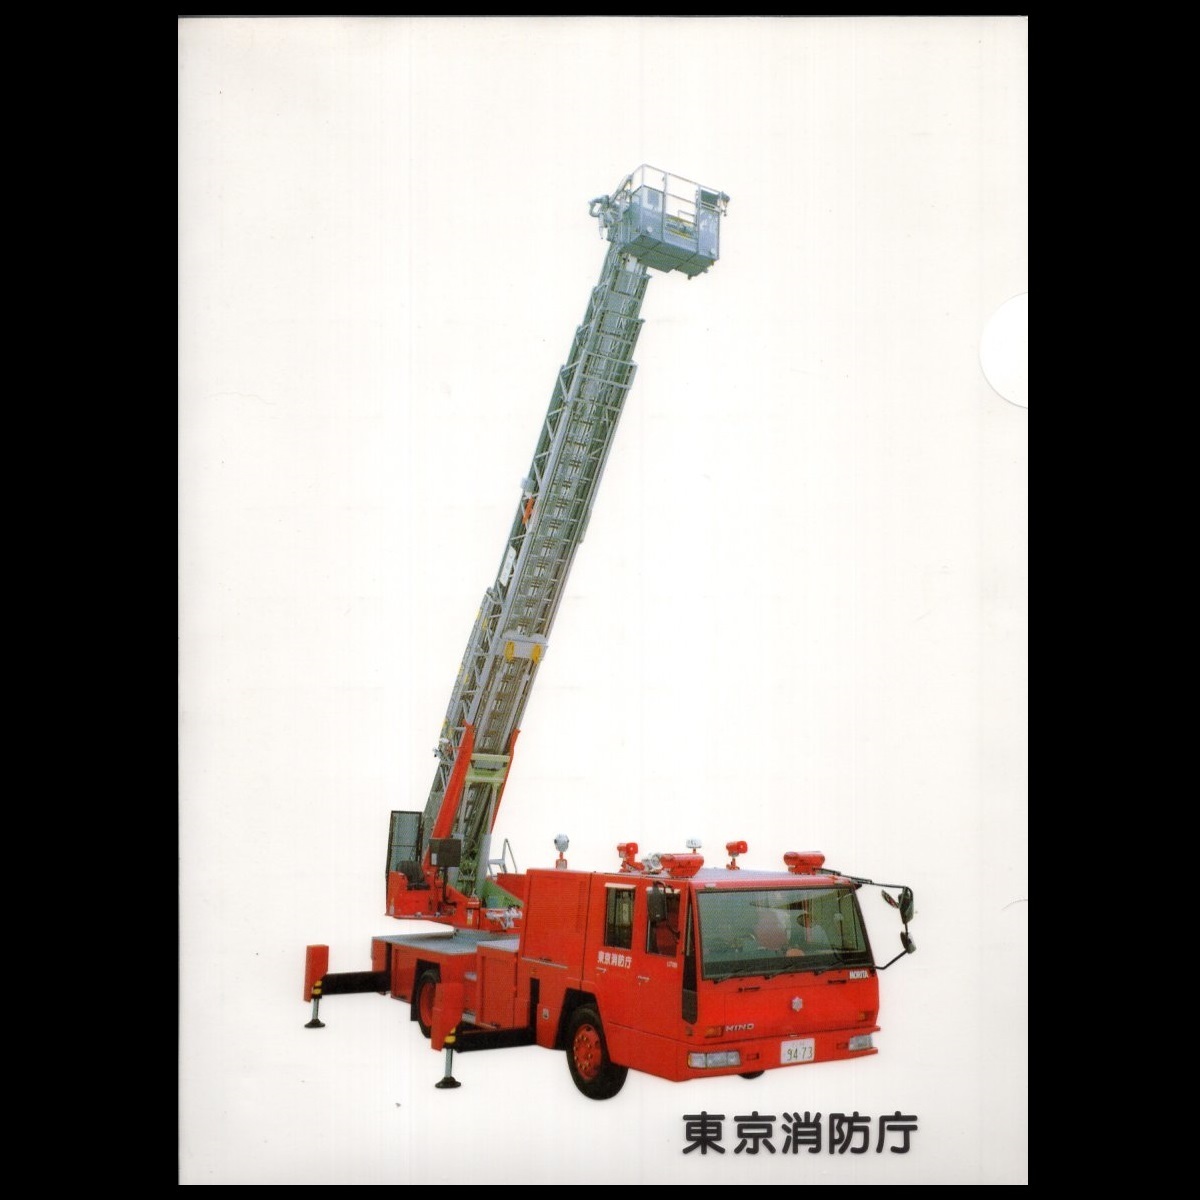  прозрачный держатель прозрачный файл лестница машина Tokyo пожаротушение .A4 бумага для пожаротушение . пожарная машина Fire engine